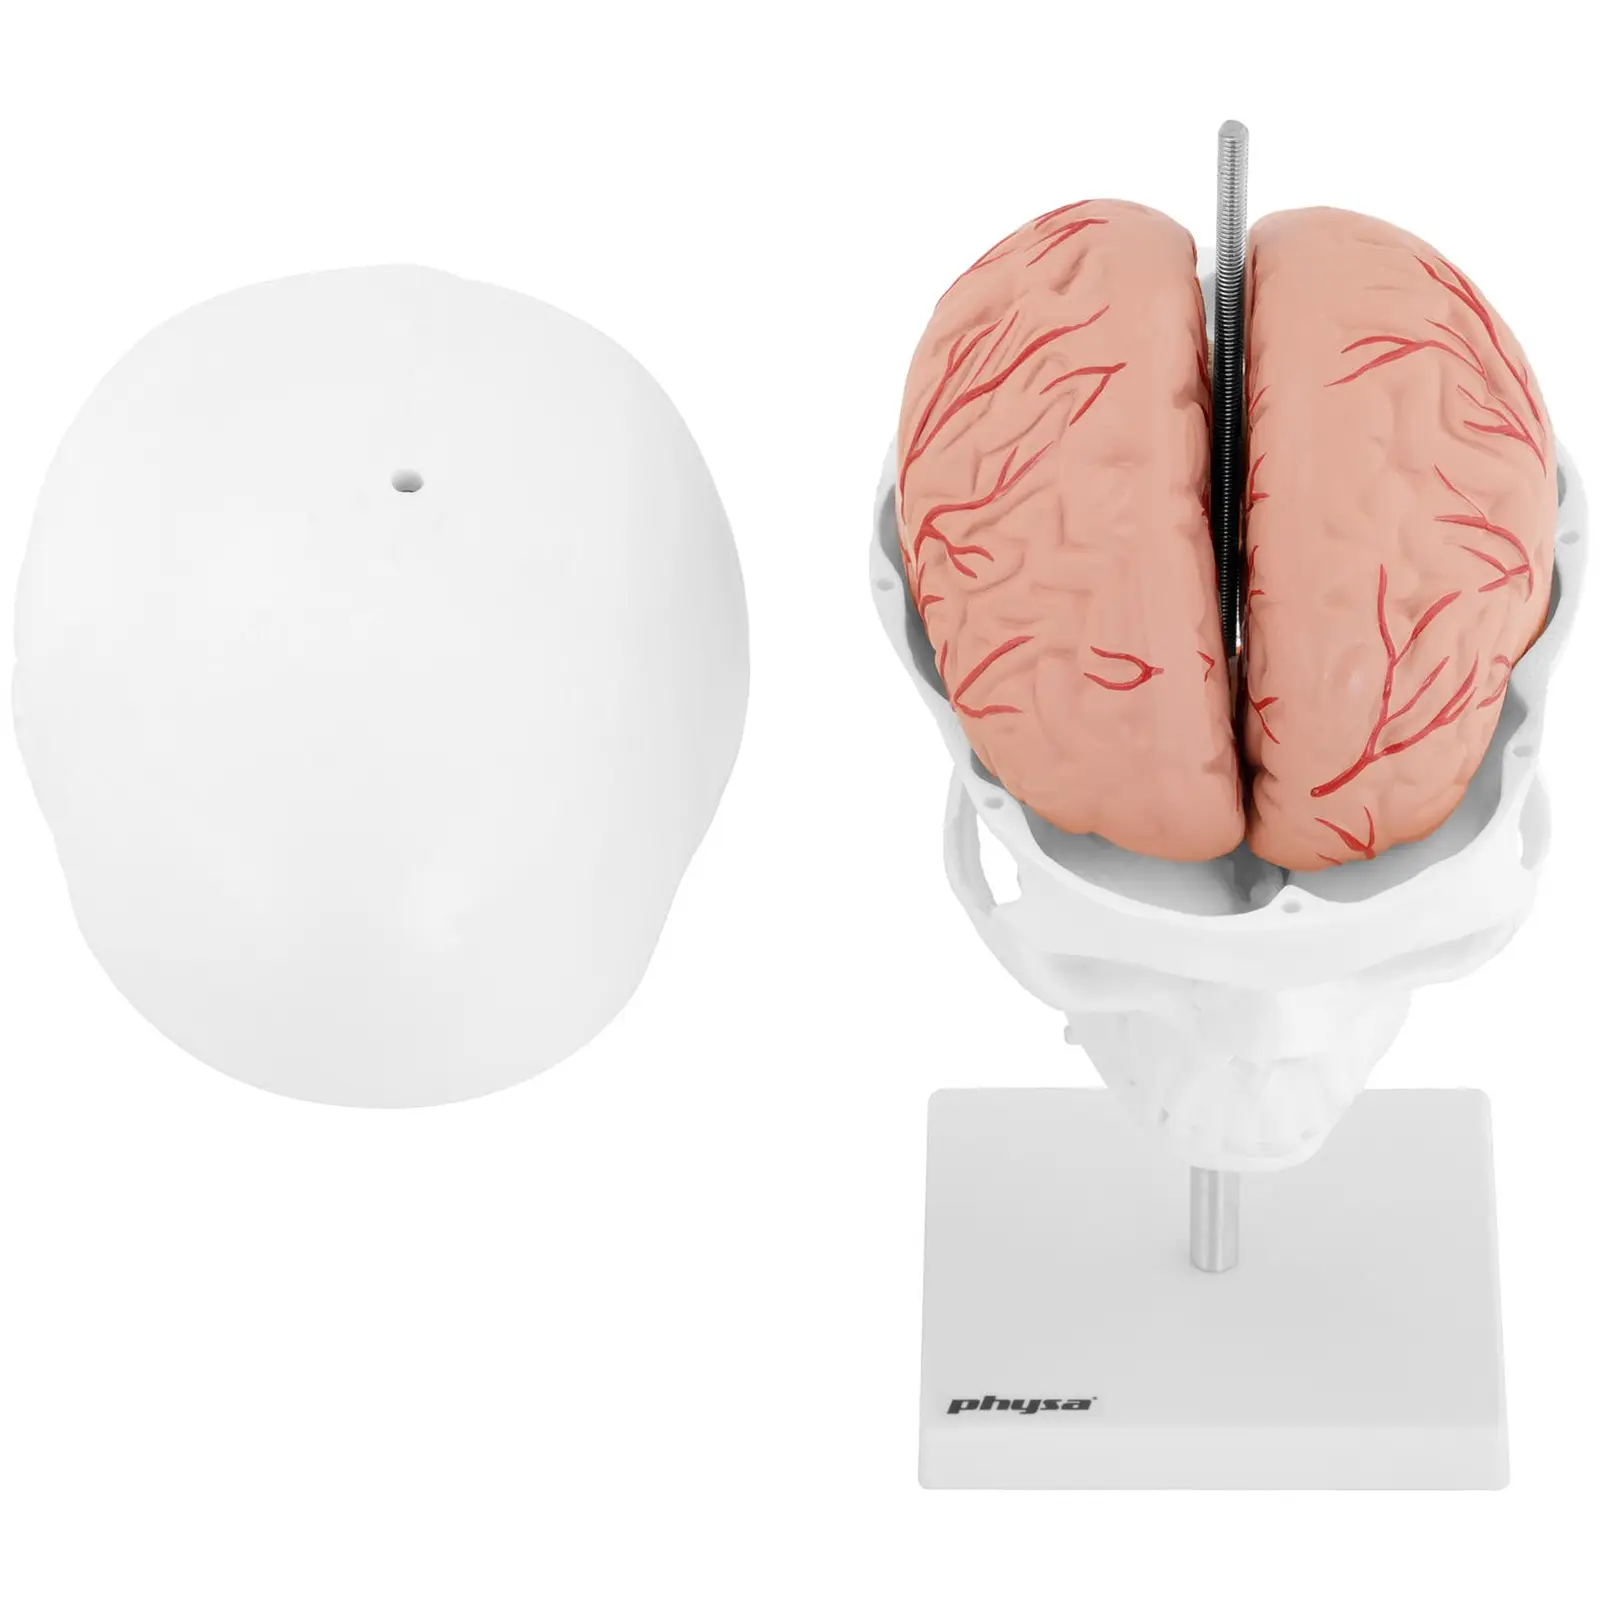 Czaszka człowieka - mózg - model anatomiczny